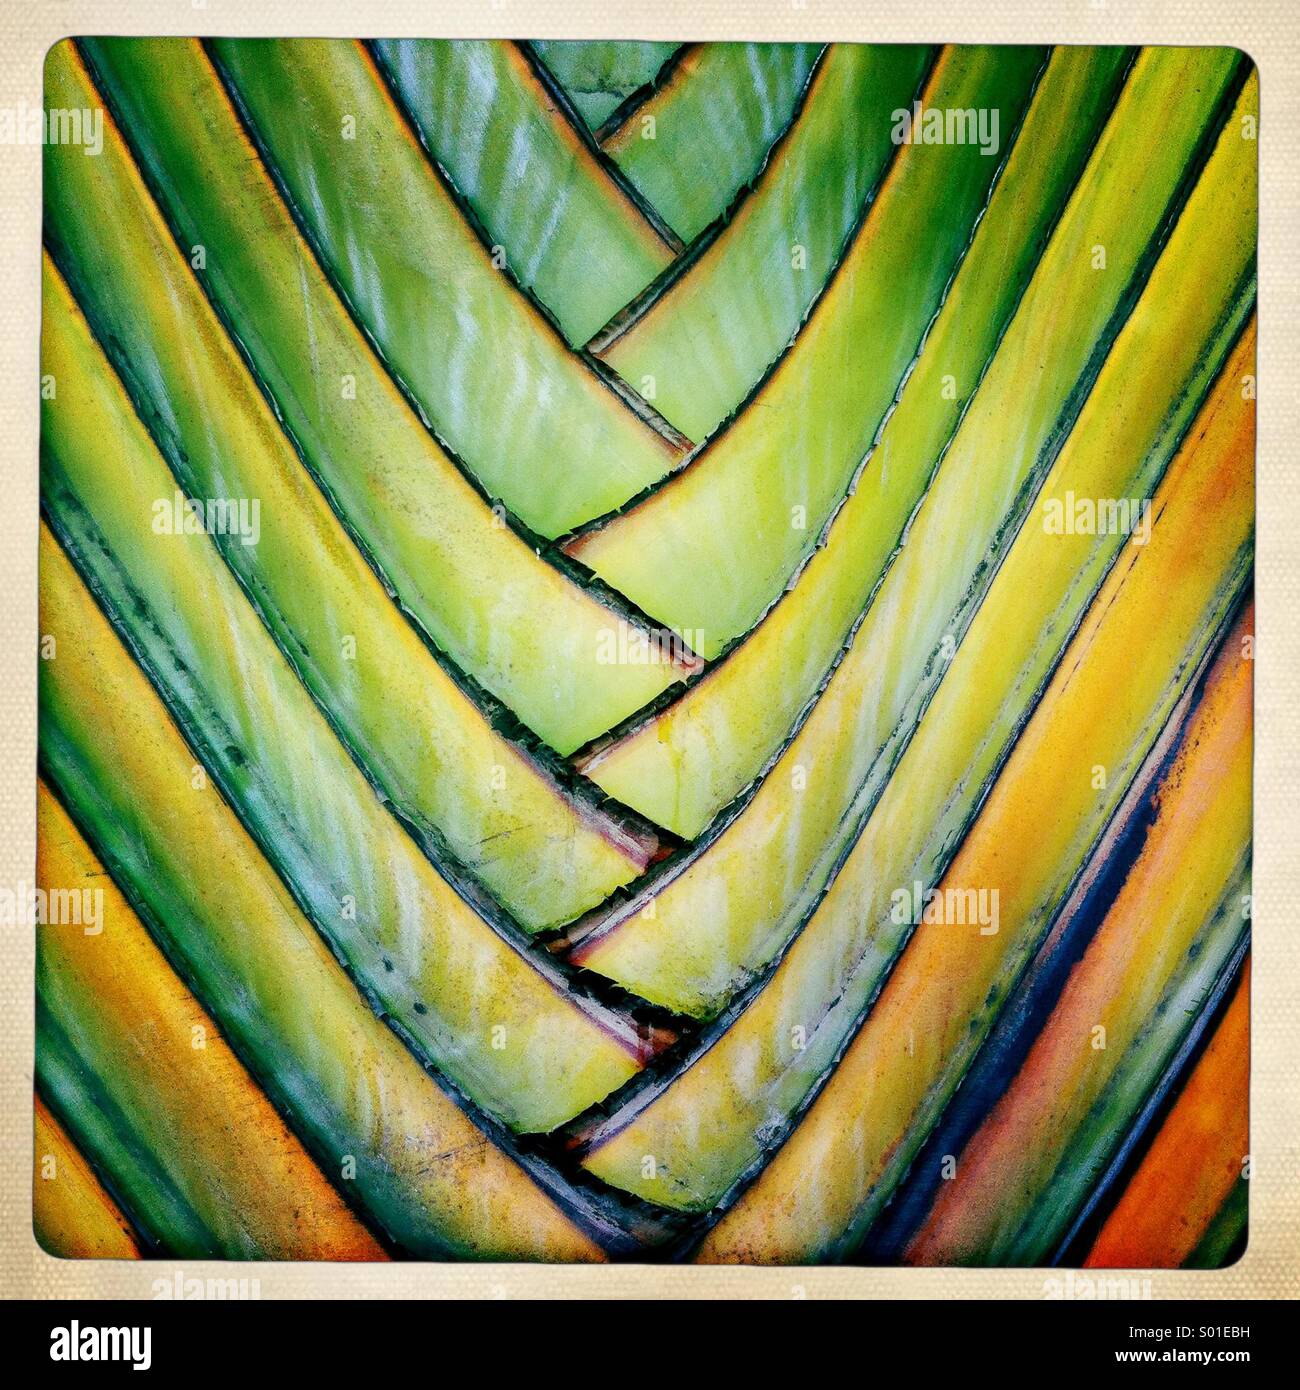 Abstract i dettagli colorati di un palm ornamentali. Foto Stock